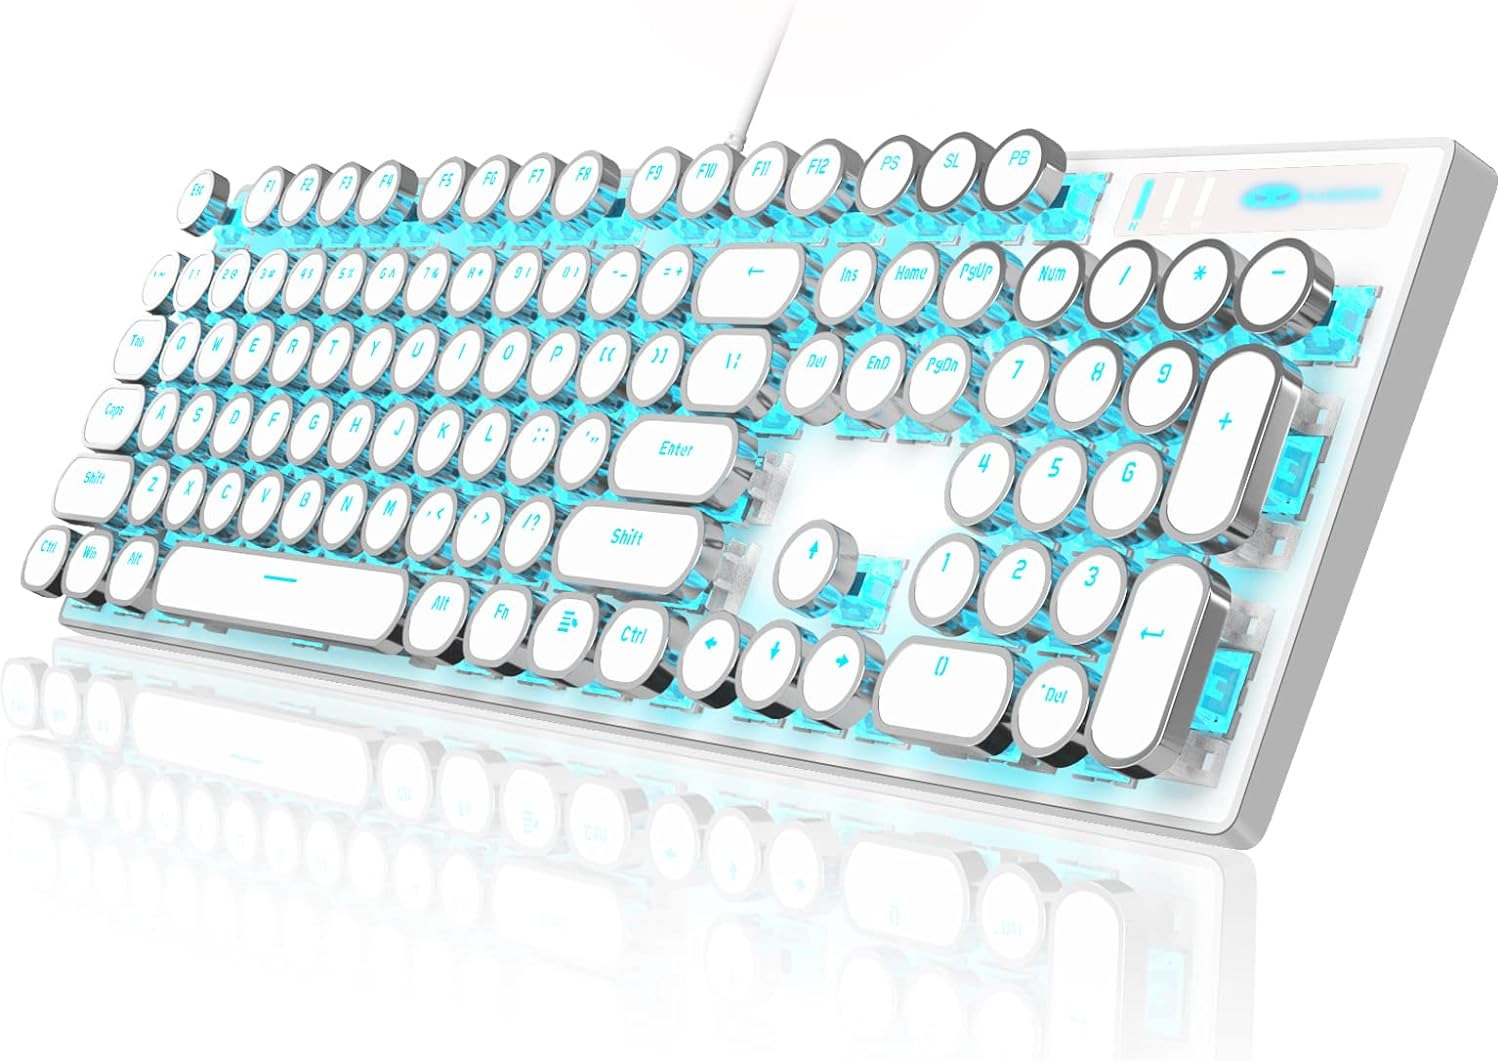 Typewriter Style Mechanical Gaming Keyboard, White Retro Punk Gaming Keyboard wi